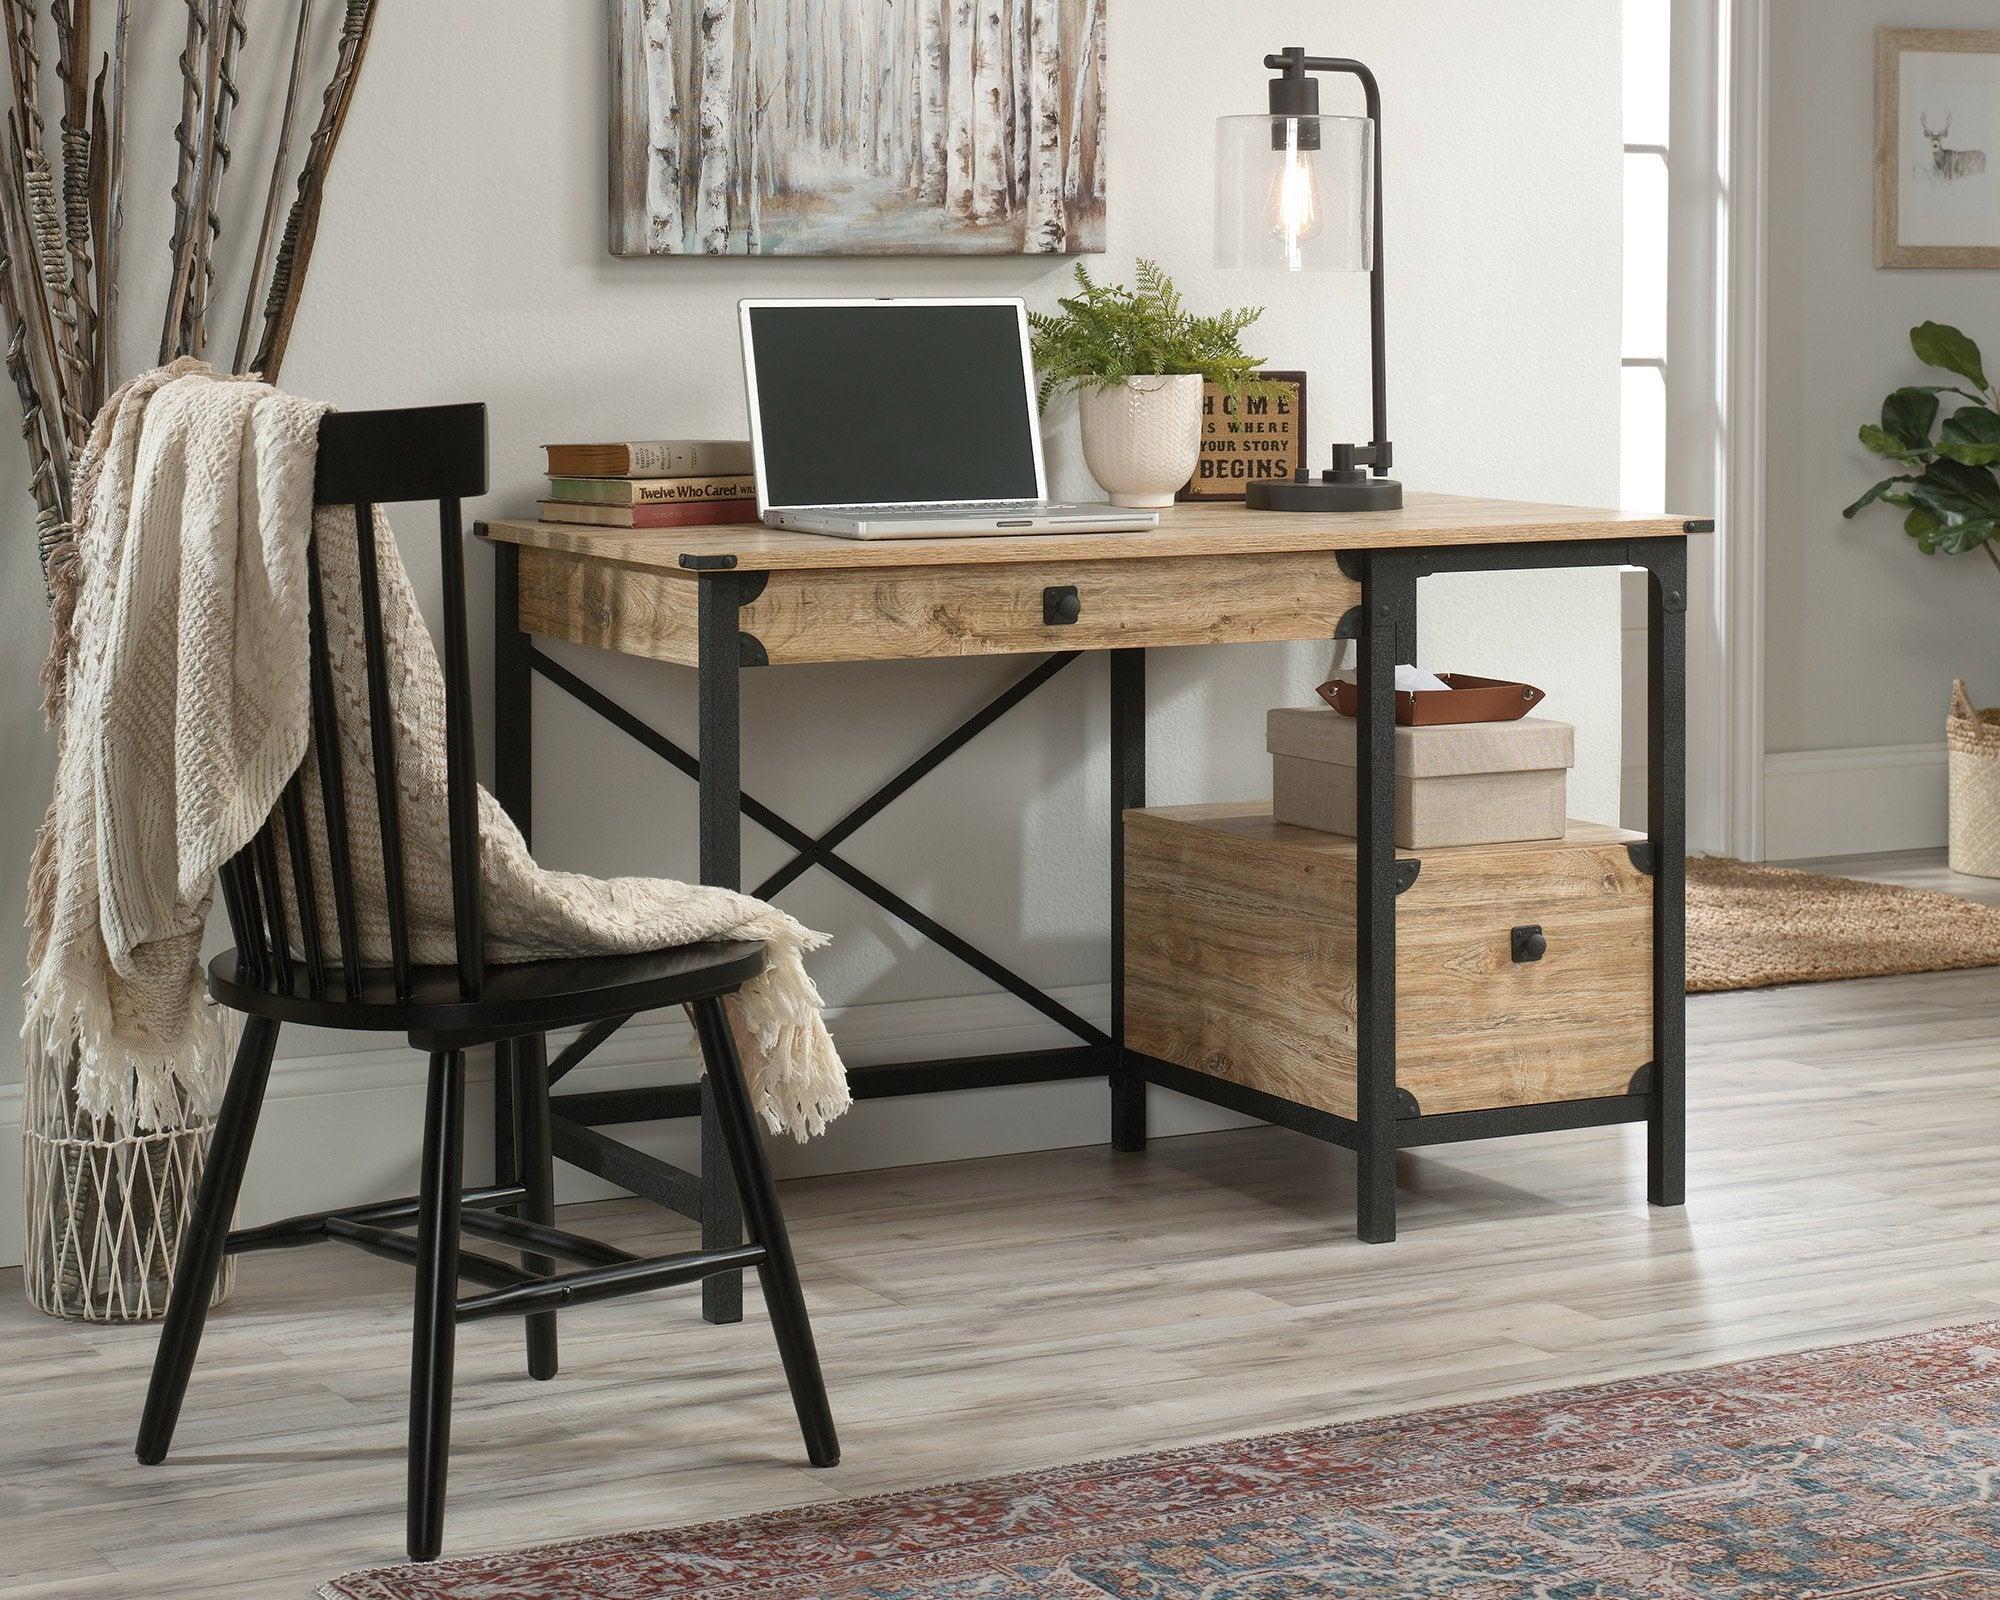 Steel gorge desk milled mesquite - crimblefest furniture - image 1